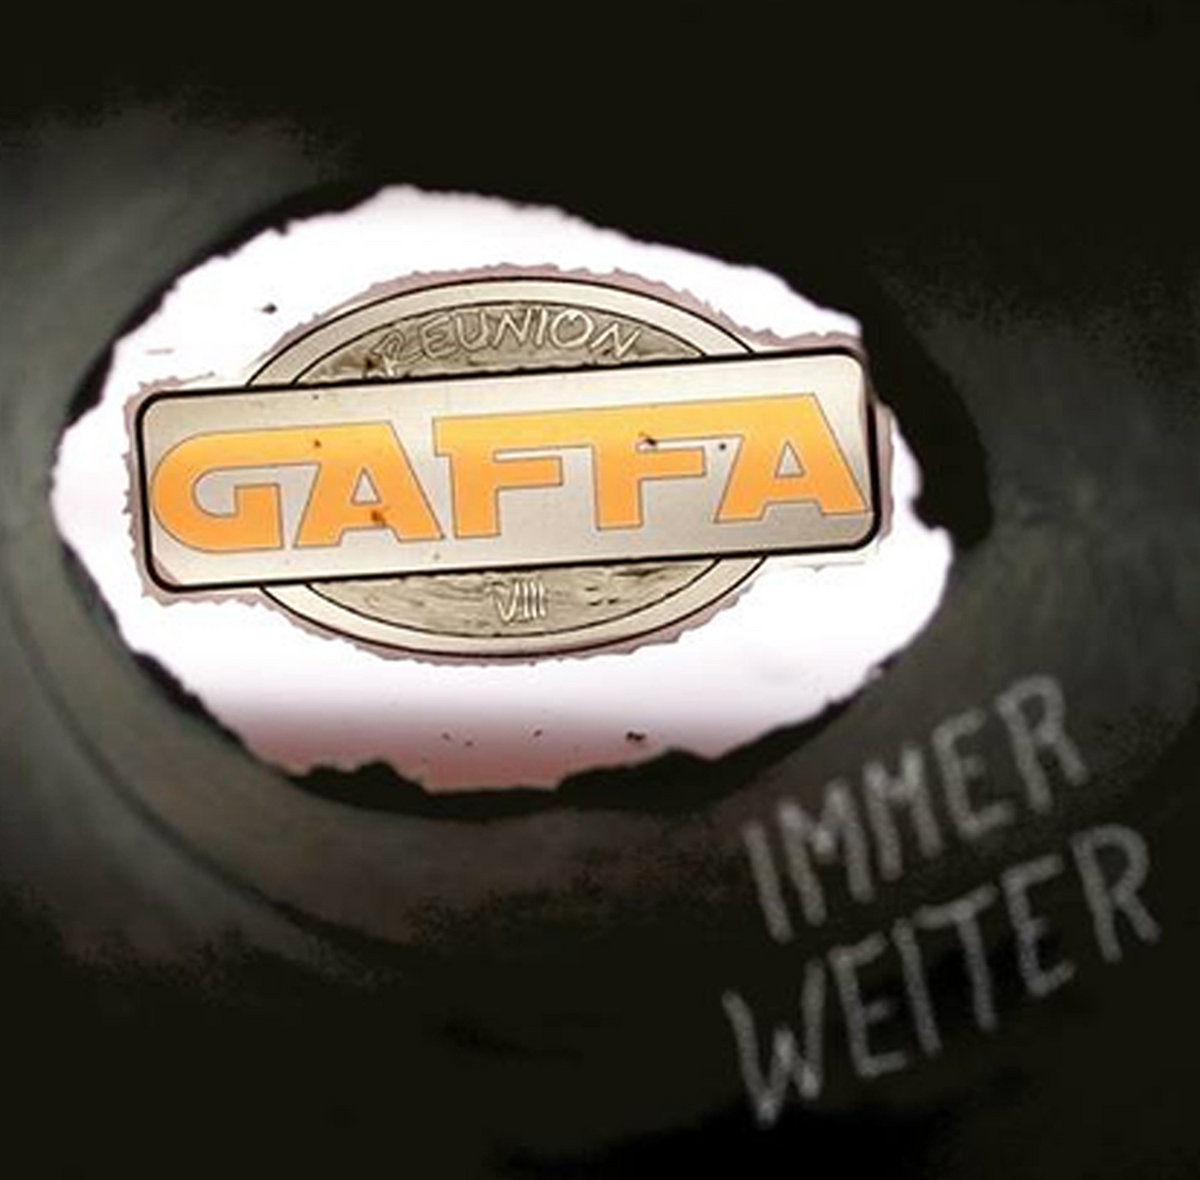 Gaffa - Immer Weiter (2016)